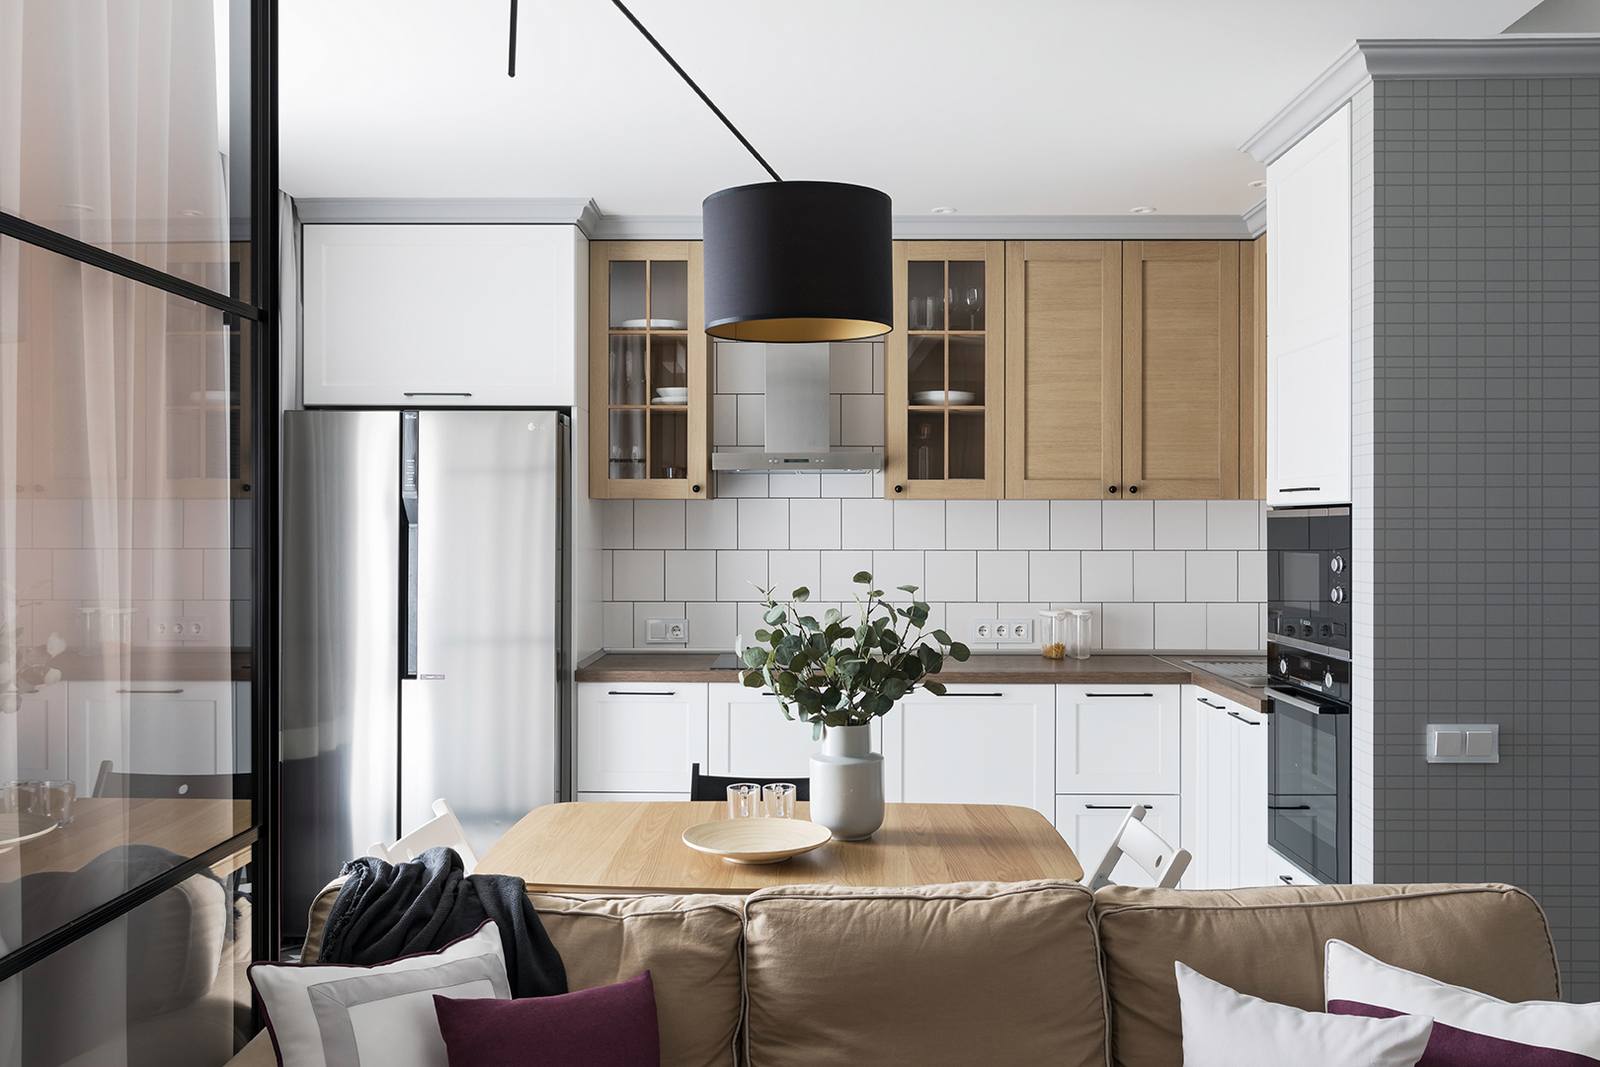 Phòng bếp thiết kế kiểu chữ L, giải pháp phù hợp cho căn hộ vừa và nhỏ. Hệ tủ bếp trên bằng gỗ tạo sự tương phản với tủ bếp dưới và backsplash ốp gạch mosaic trắng. Bề mặt tủ lạnh bằng thép không gỉ bóng bẩy, phản chiếu ánh sáng từ ô cửa đầy nắng.